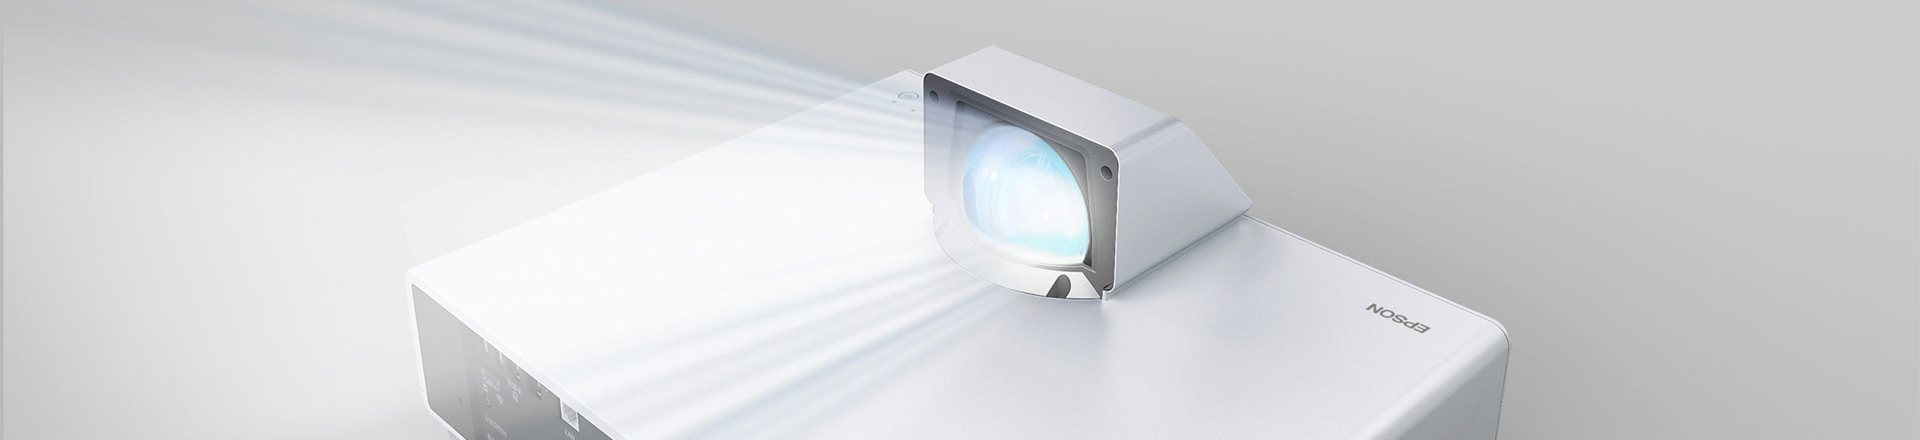 Innowacyjne projektory laserowe Epson już dostępne